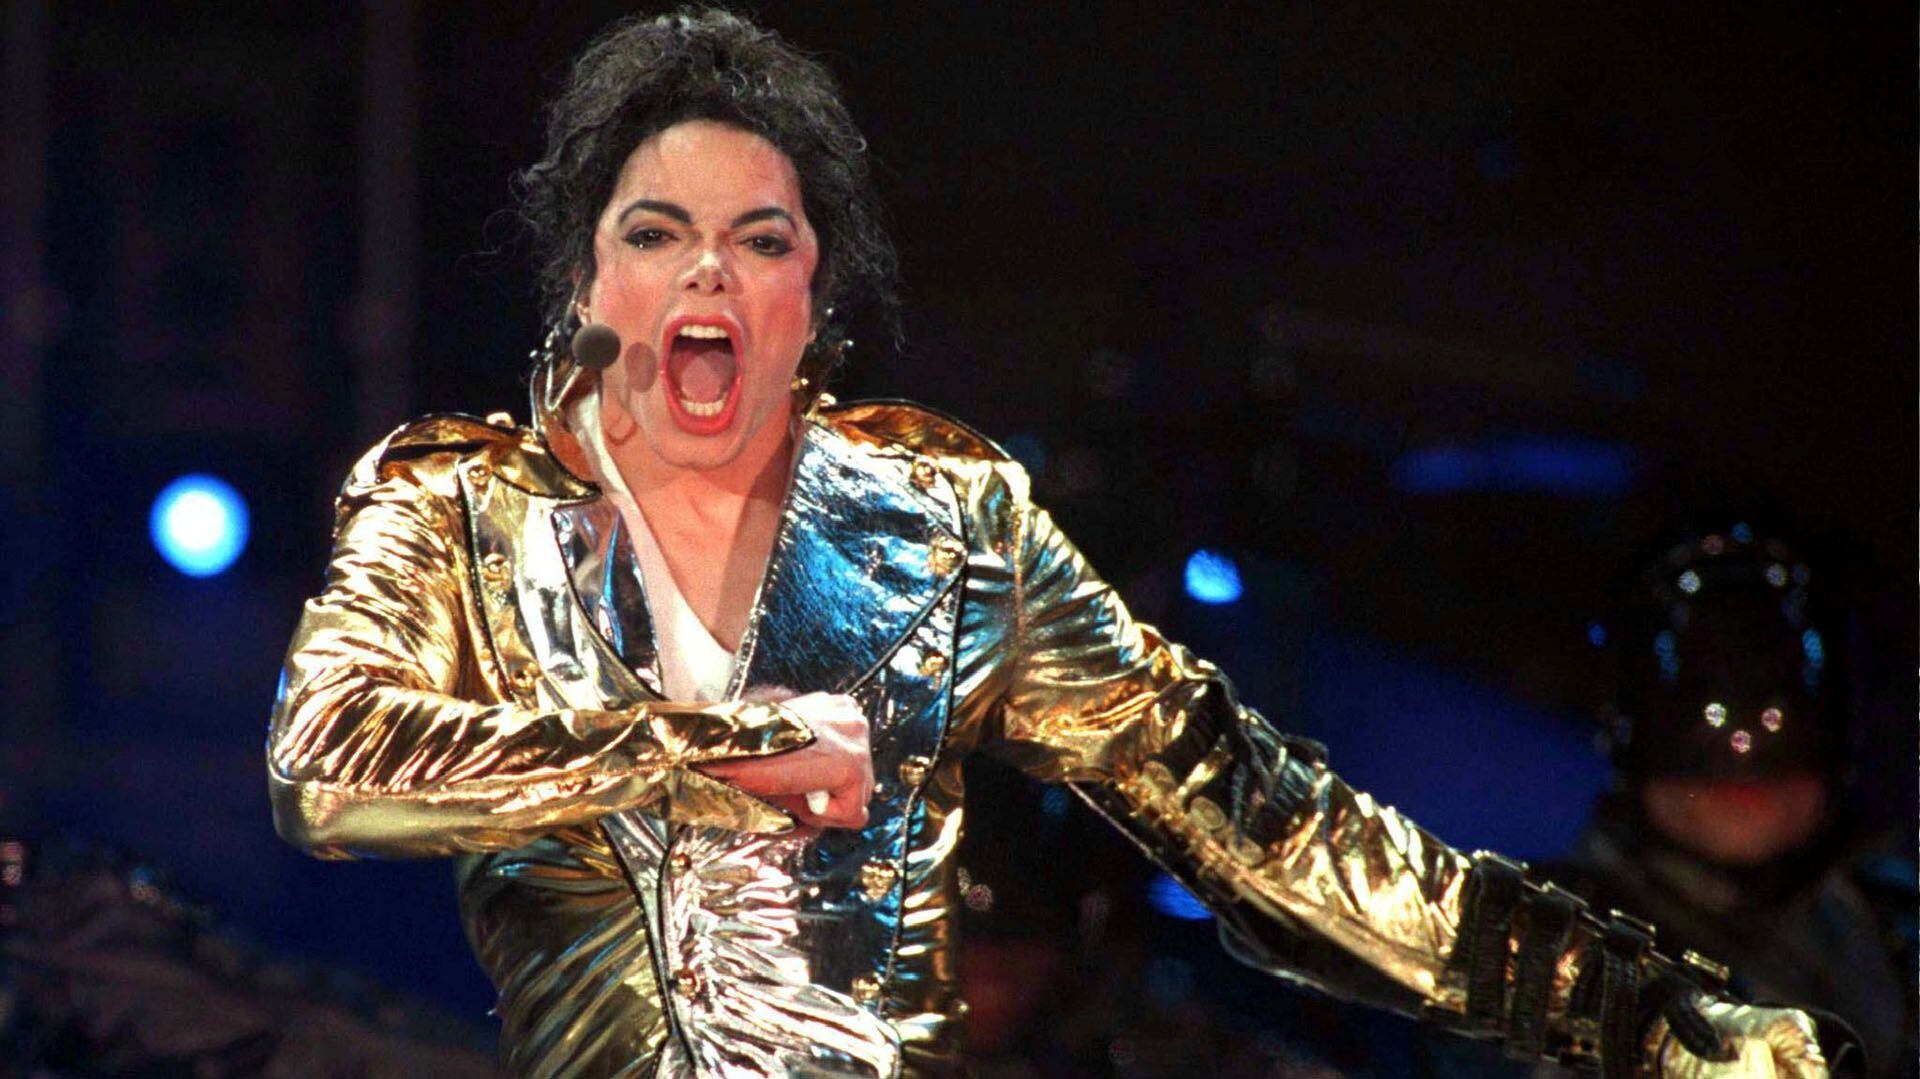 El Rey del pop, Michael Jackson, murió hace diez años (Foto: Reuters)